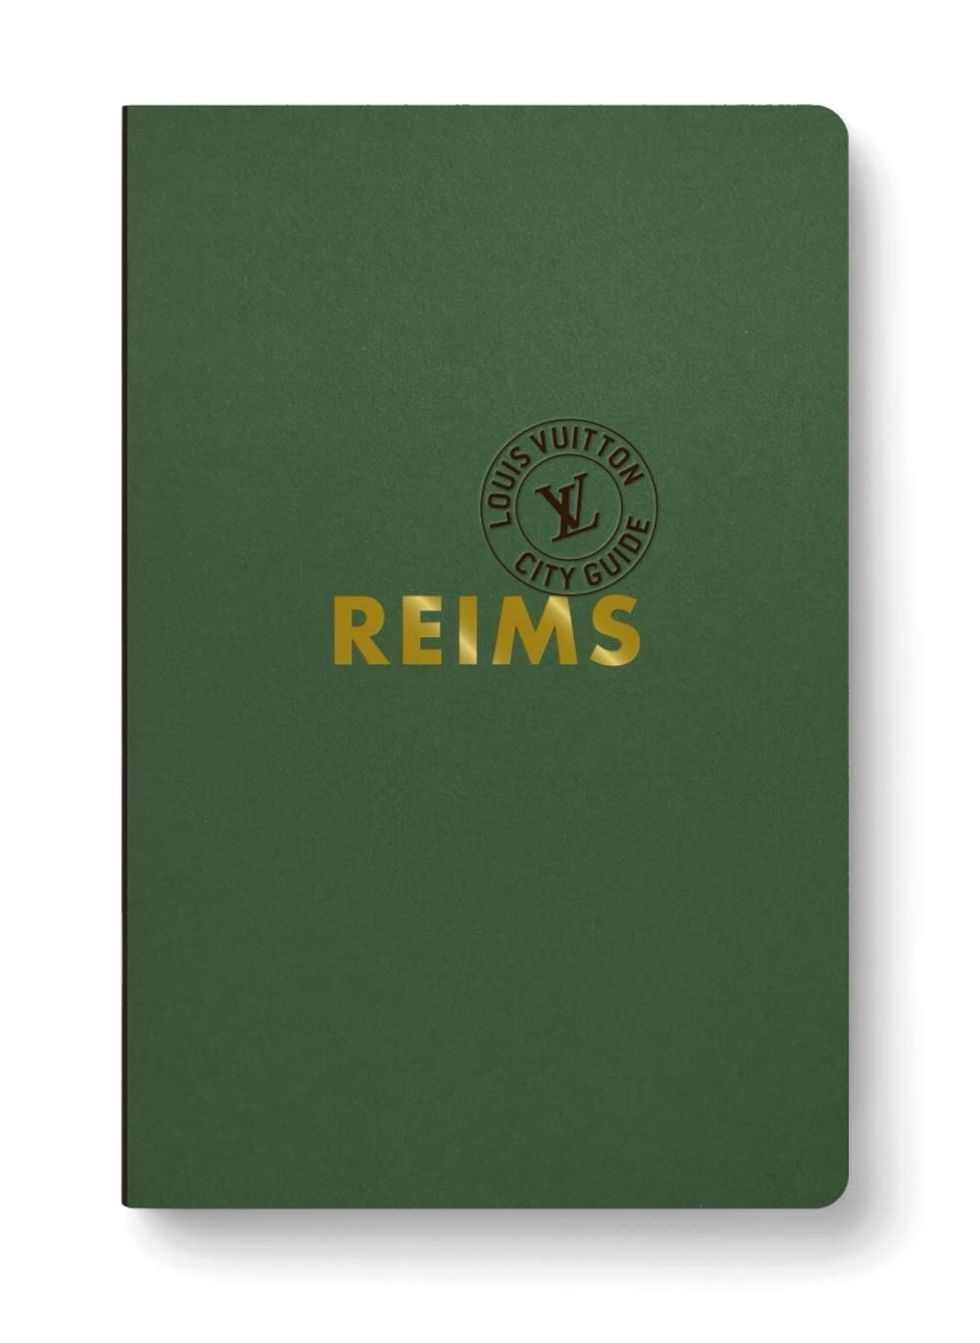 Reims City Guide 2020 (anglais)